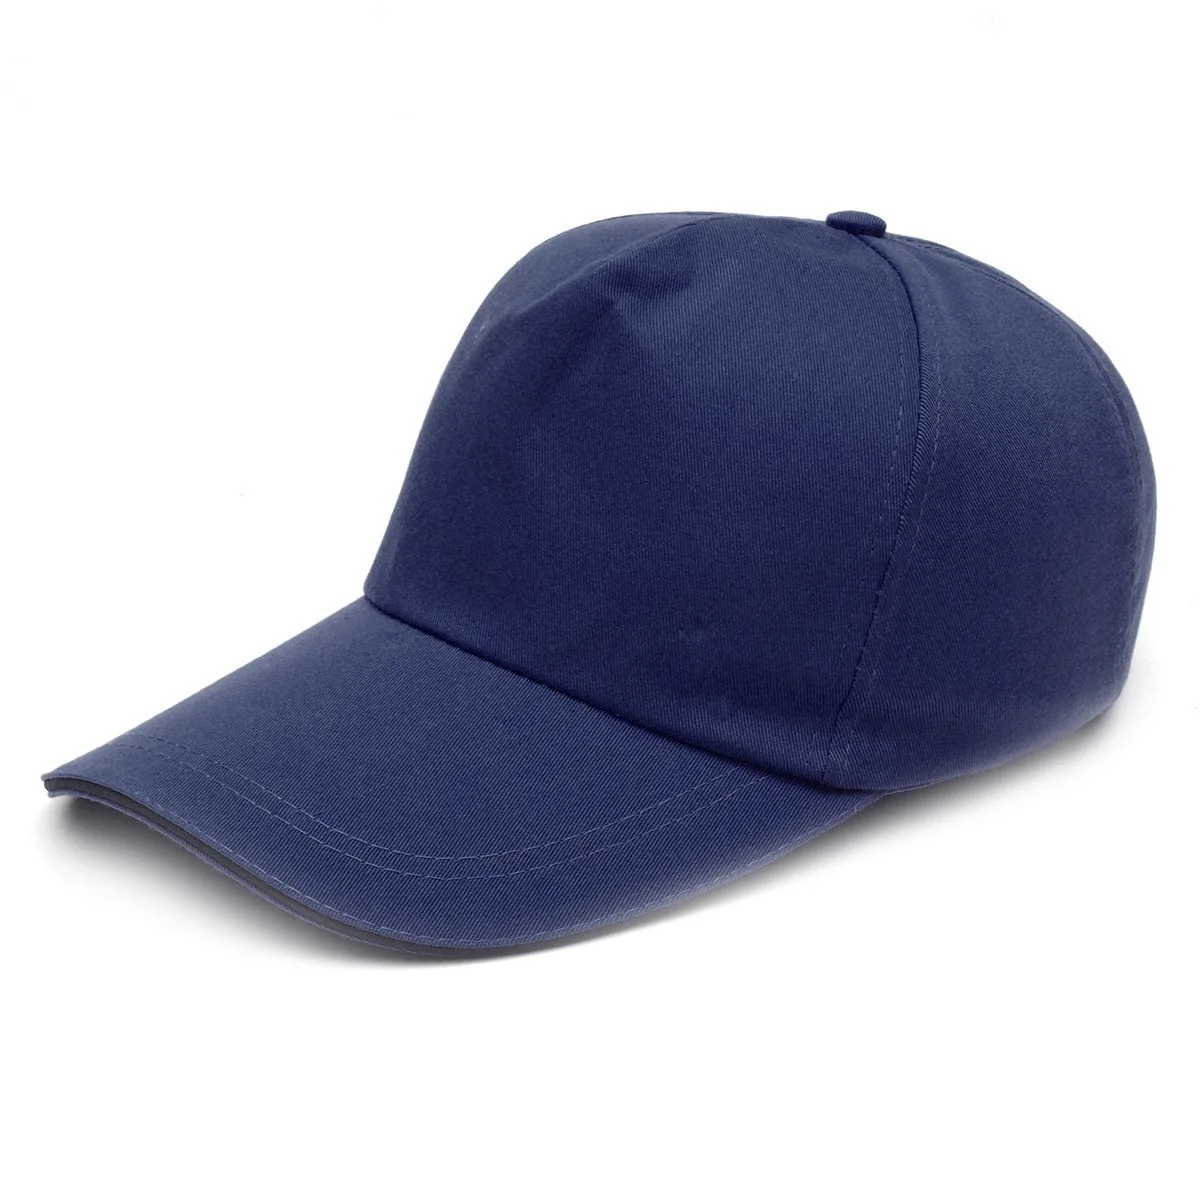 Защитная кепка в бейсбольном стиле, каска для защиты головы, Легкая Защита для безопасности Работы, Защитный шлем